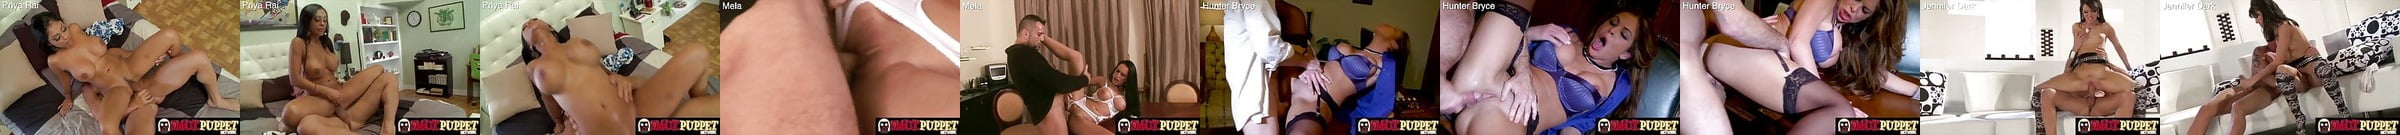 Hunter Bryce Free Porn Star Videos 57 Xhamster